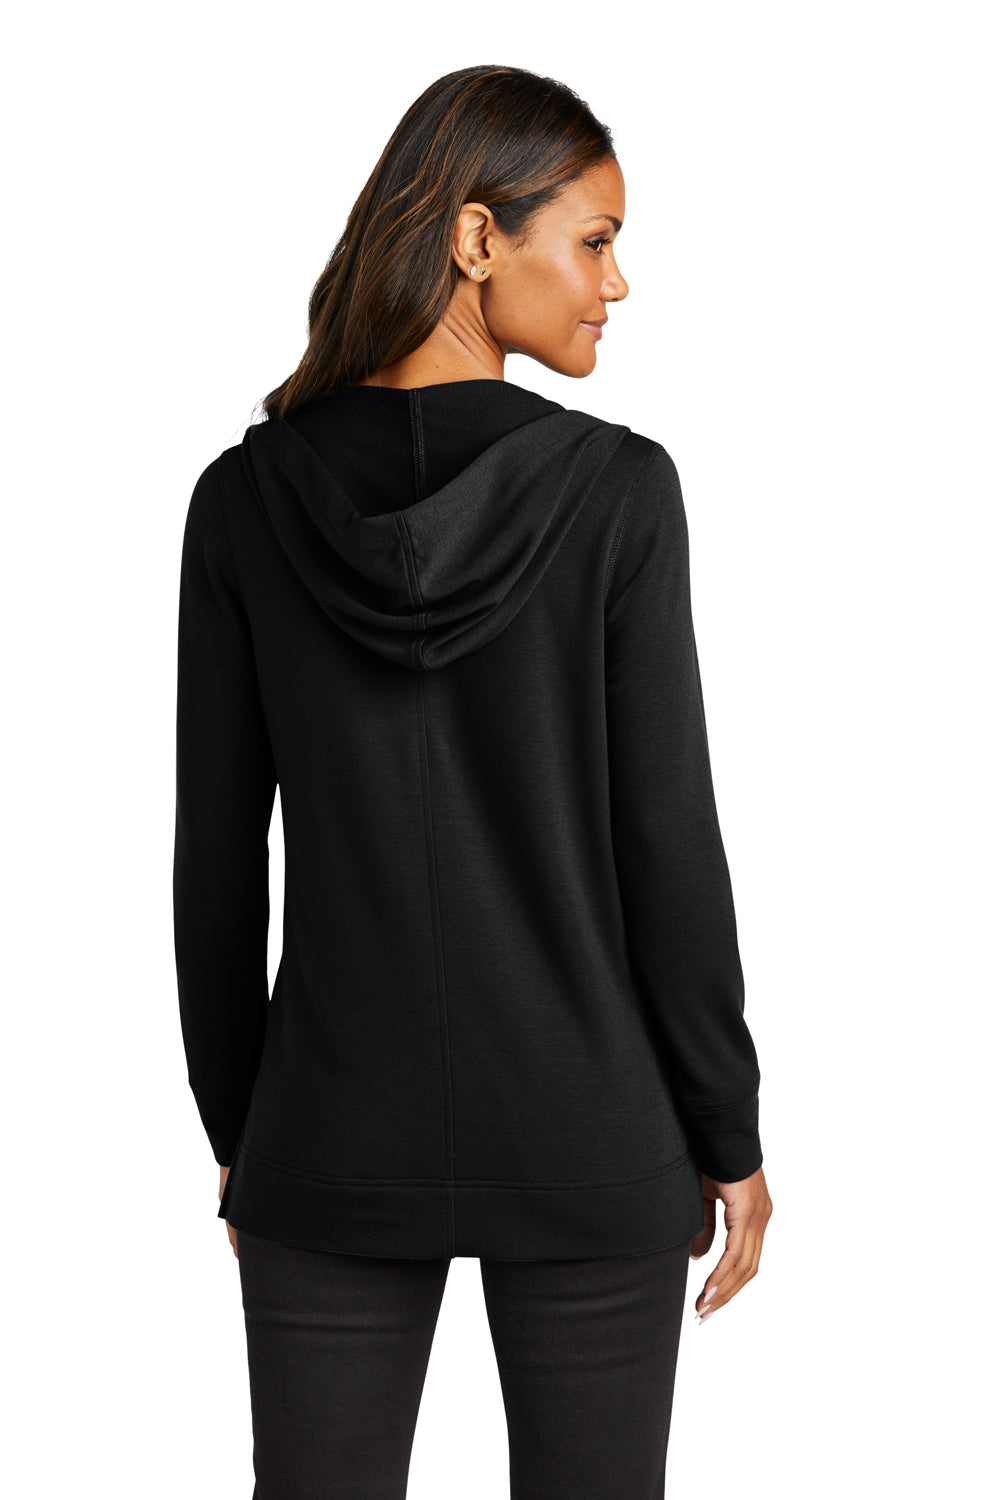 Port Authority LK826 Womens Microterry Hooded Sweatshirt Hoodie Deep Black Back